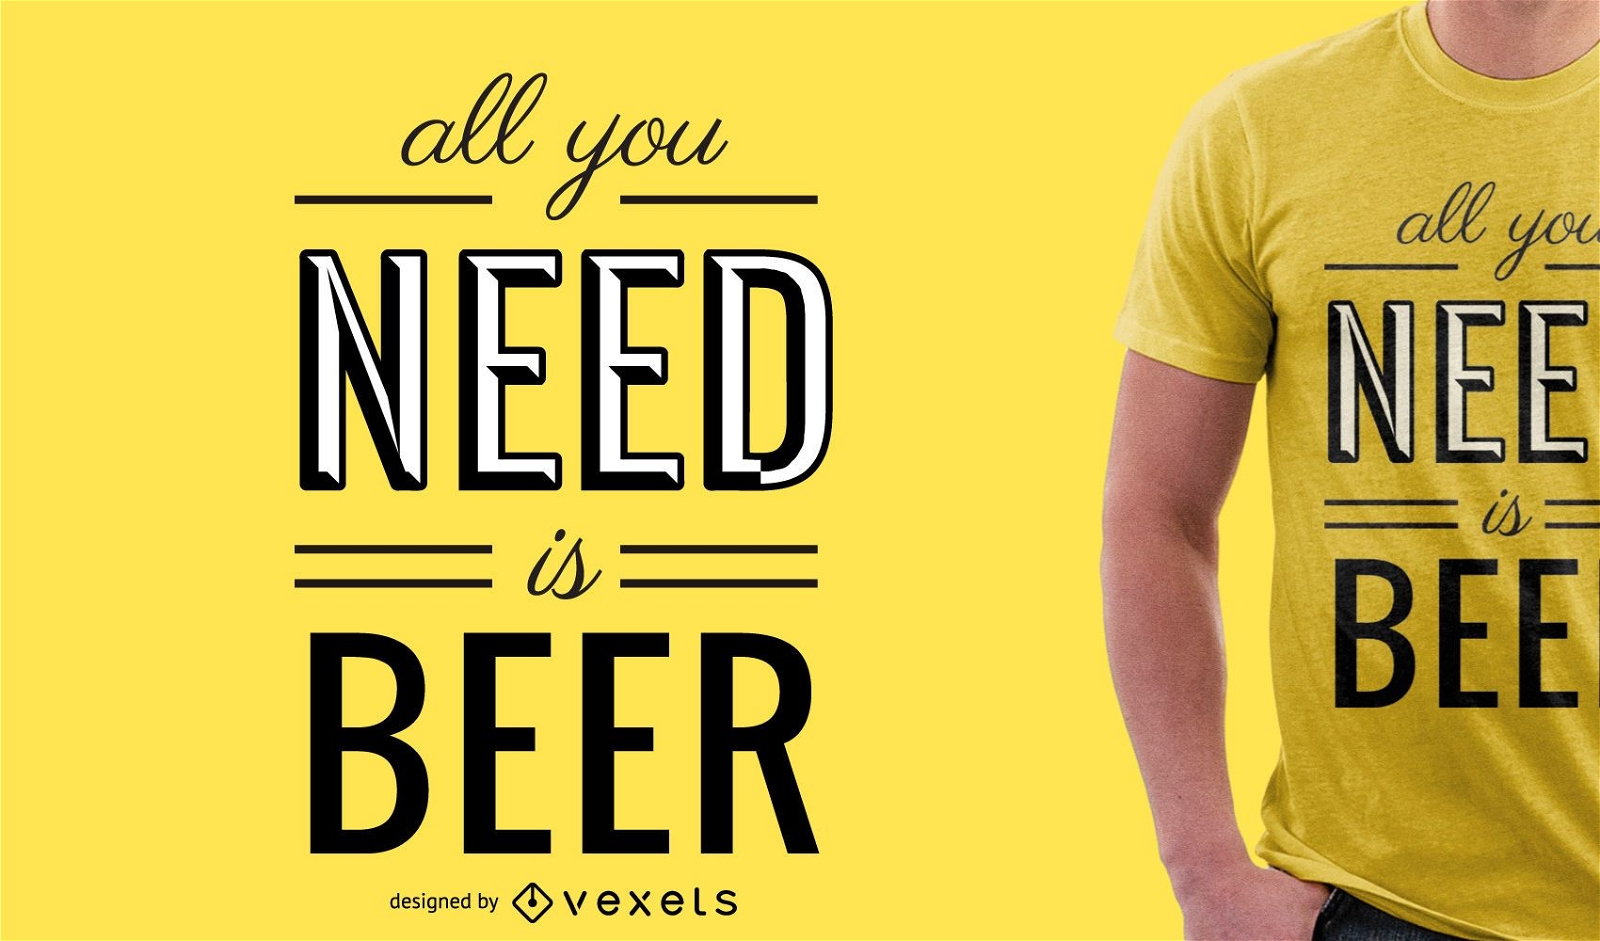 Tudo que você precisa é um design de camiseta de cerveja